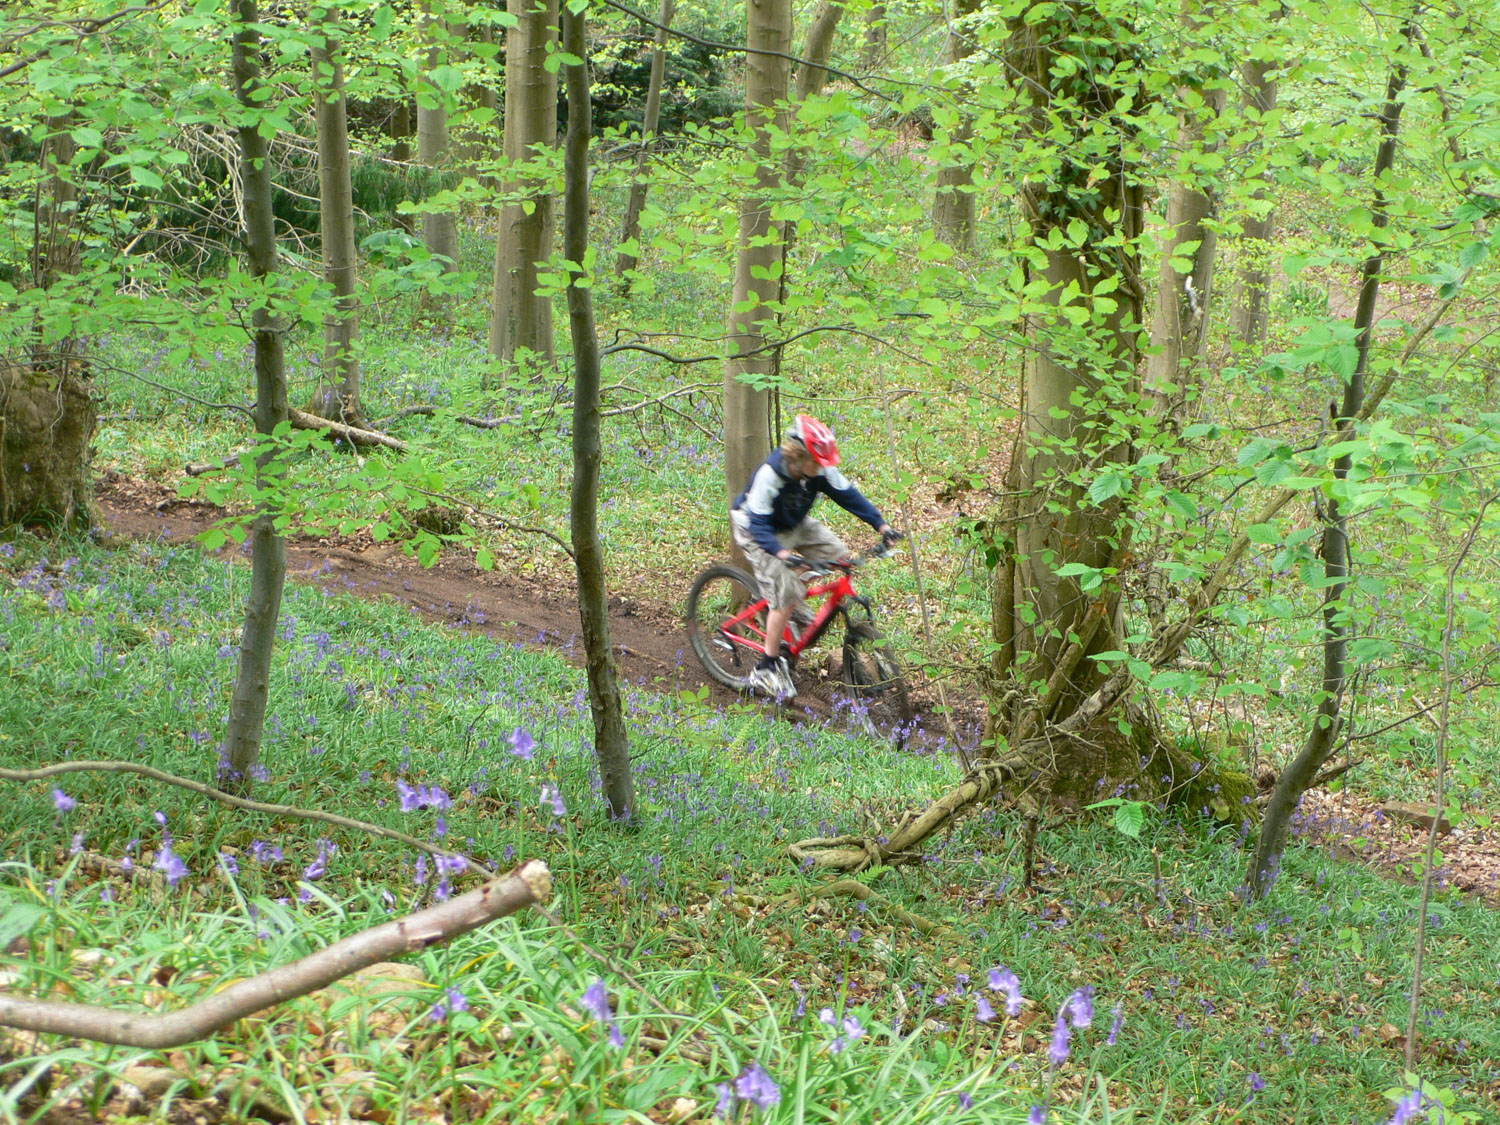 Mountainbiker in woods near Abbots pool